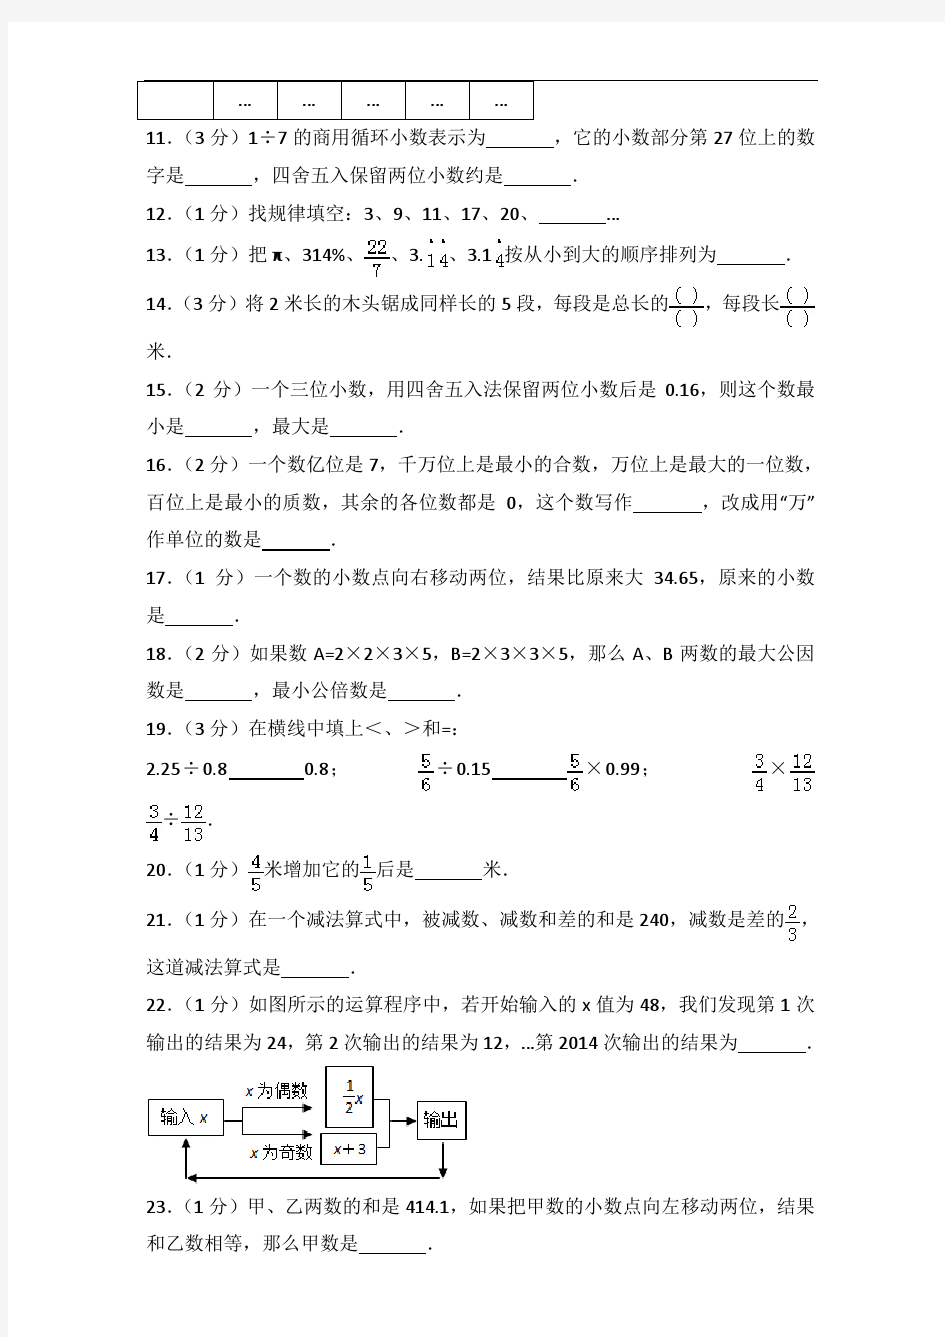 【真卷】2014年天津市南开中学小升初入学考试数学试卷及答案